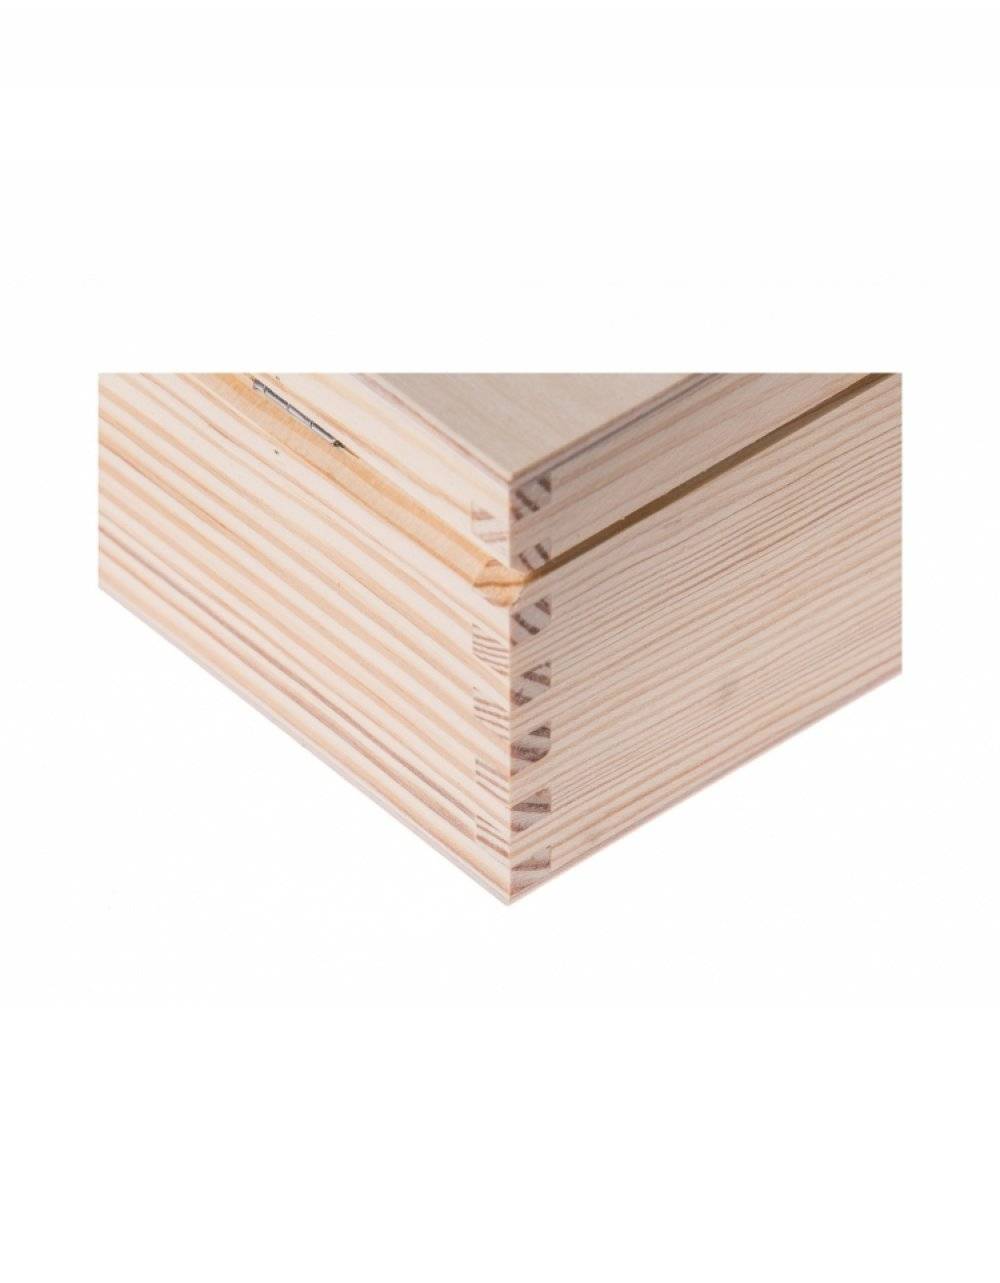 Přírodní dřevěná krabička 16x16x13 cm